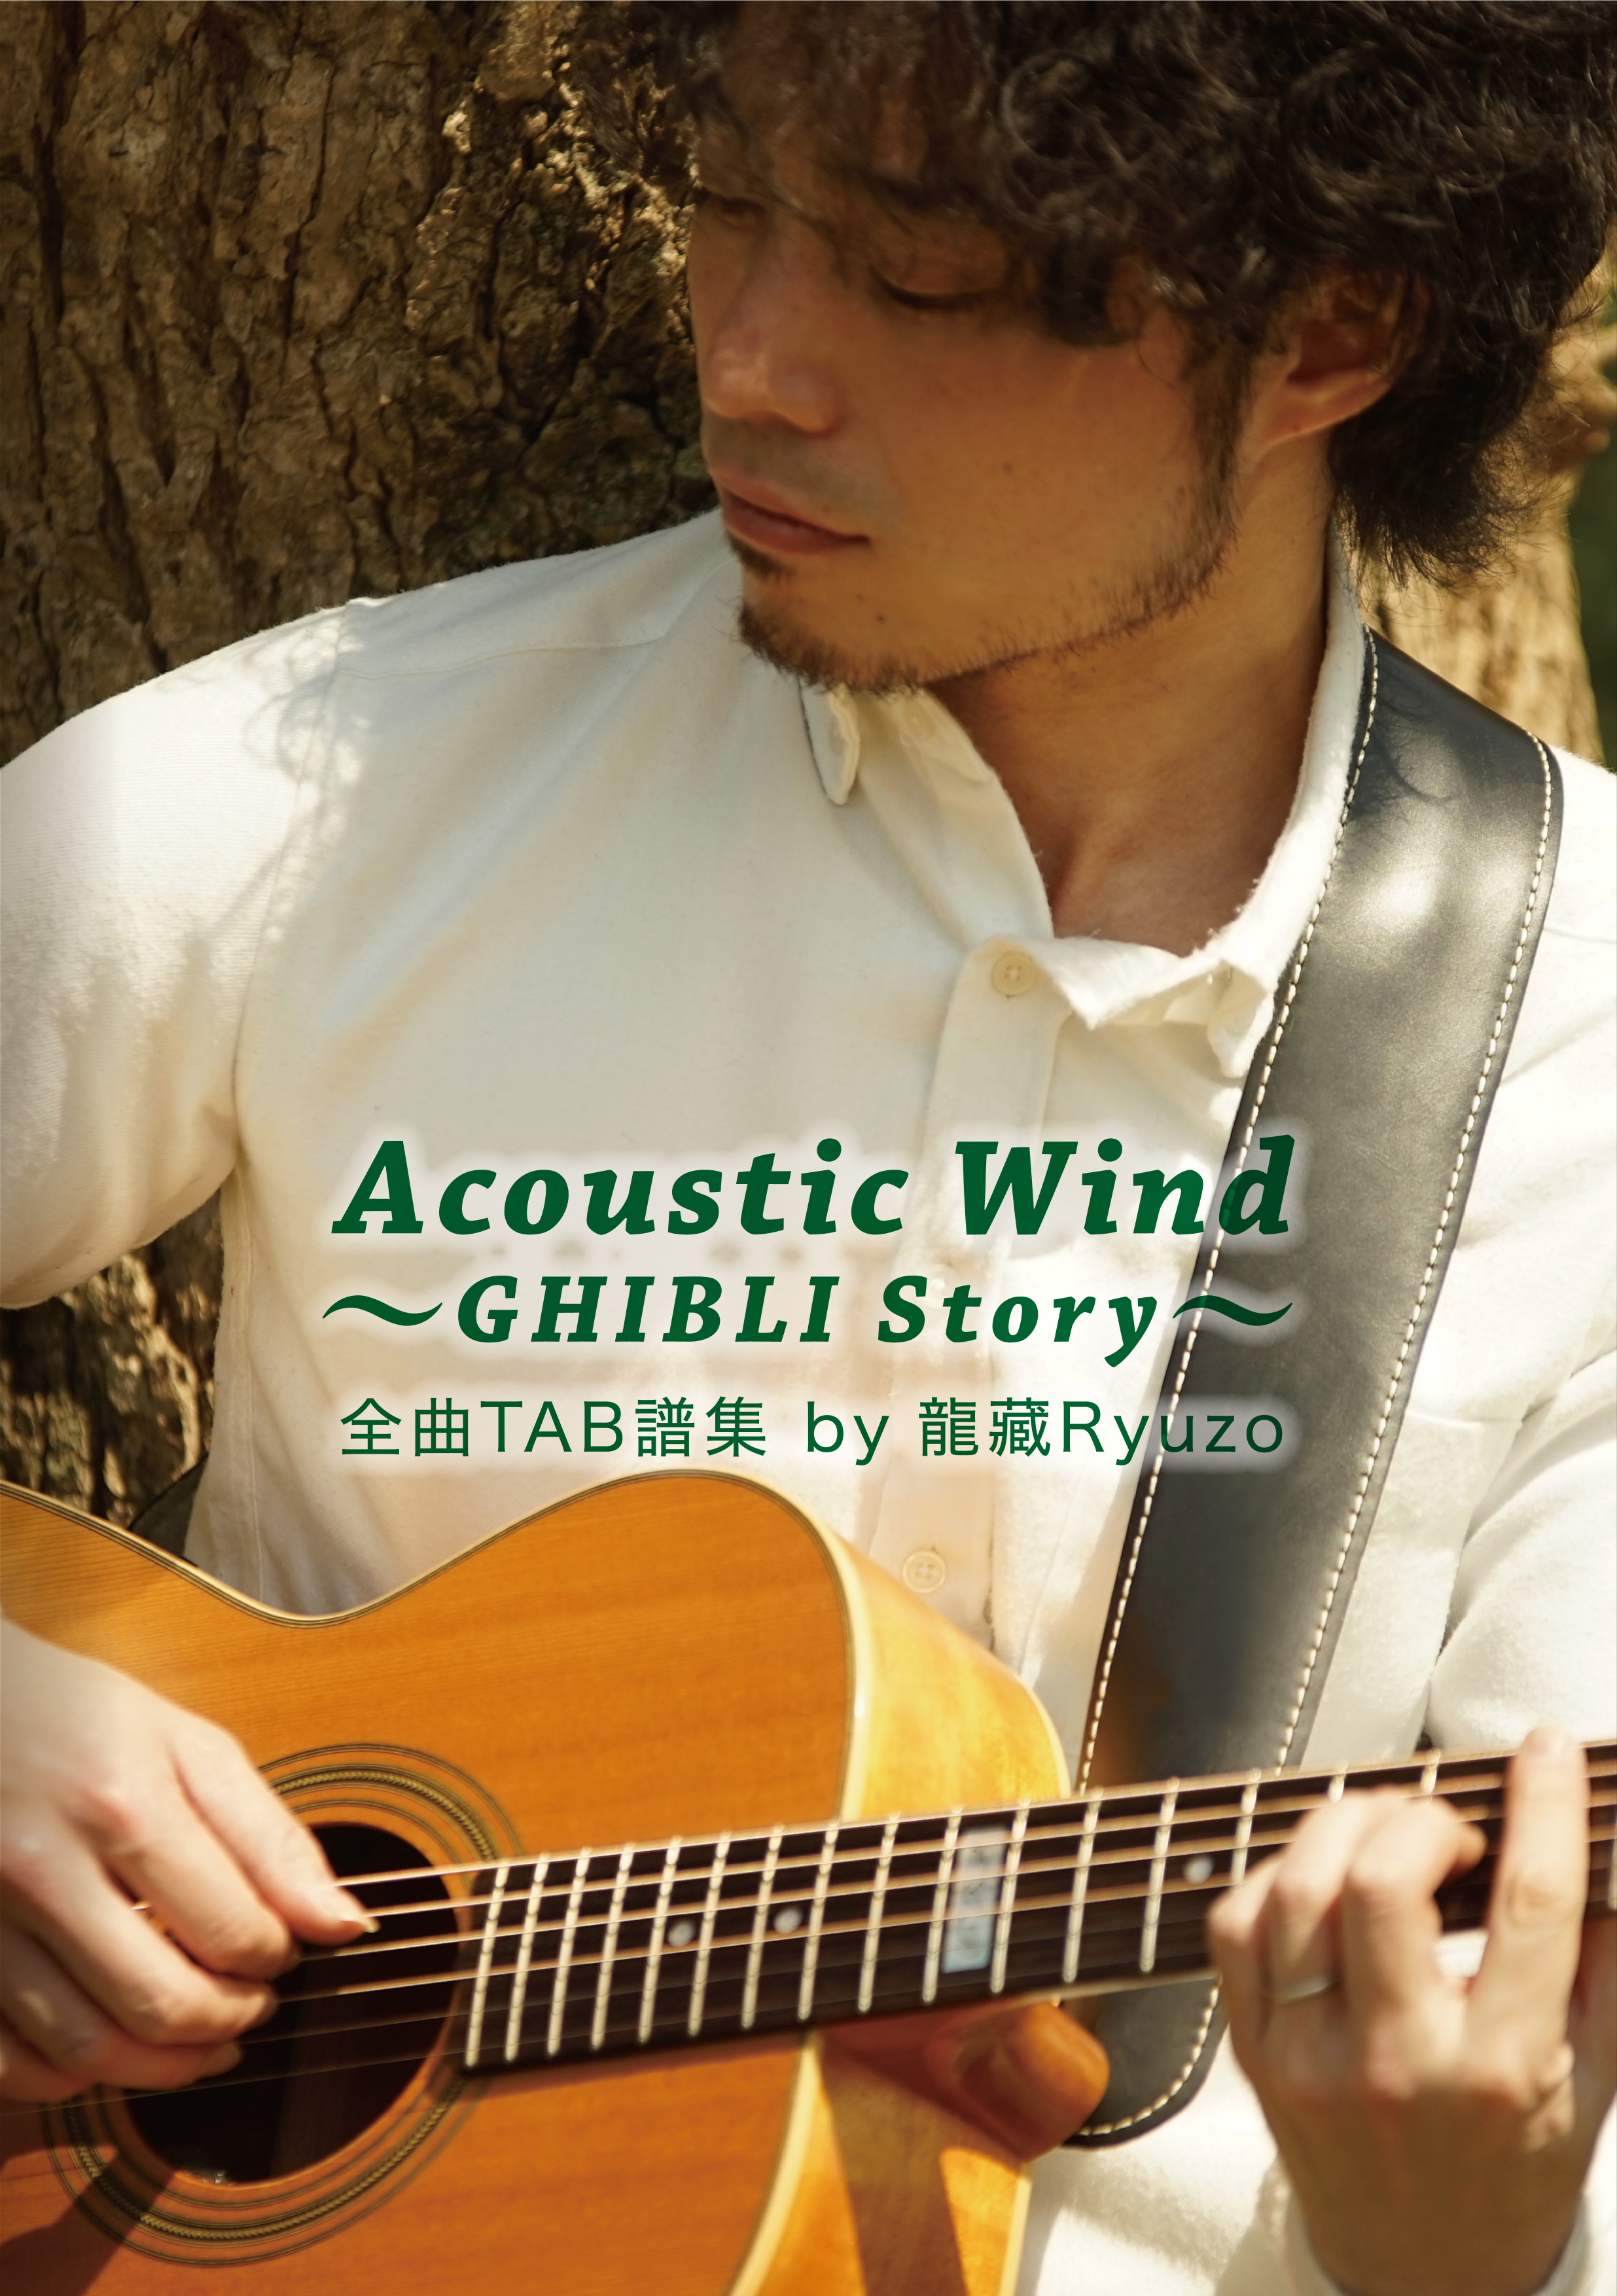 TAB Acoustic Wind〜GHIBLI Story〜 全曲TAB譜集 by 龍藏Ryuzo【ネコポス発送】 タブ